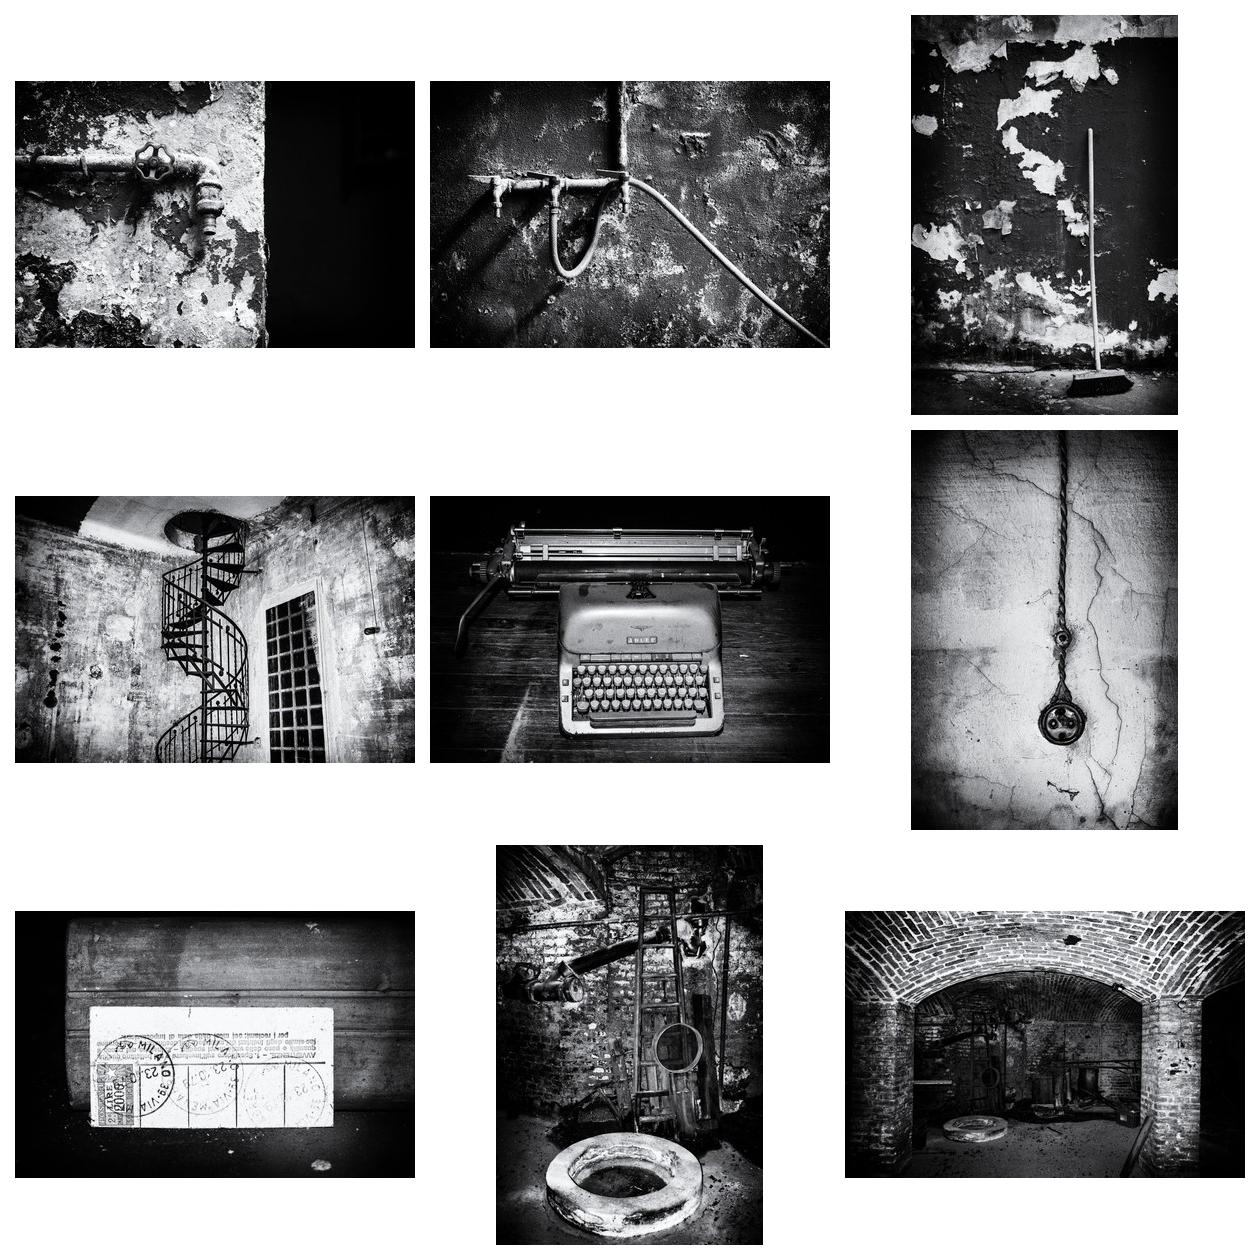 Abandoned factory in Milan - Blog-Beitrag von Fotograf Storvandre Photography / 19.06.2020 10:16